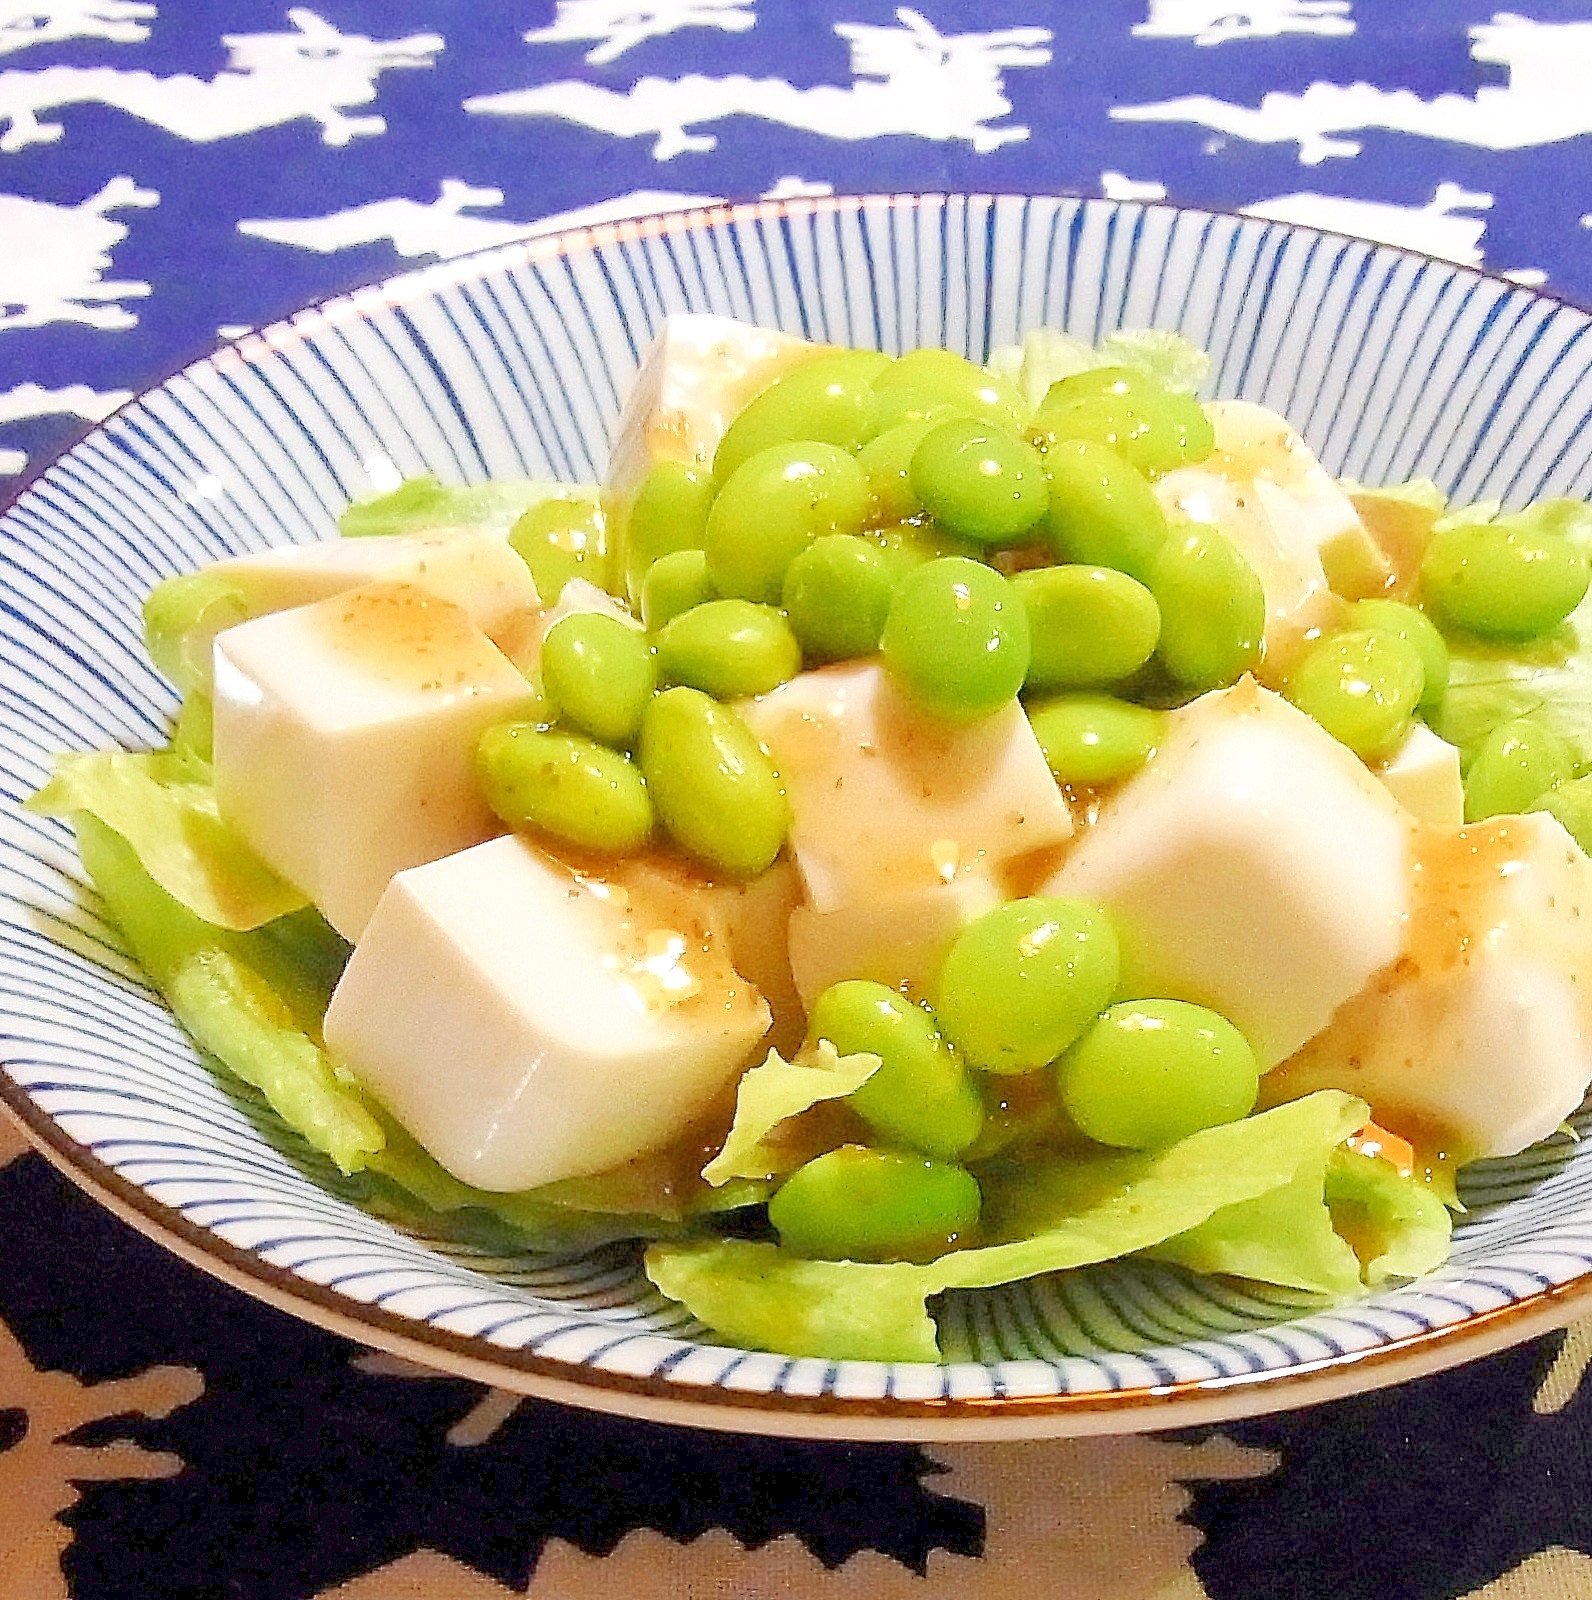 枝豆と豆腐のサラダ